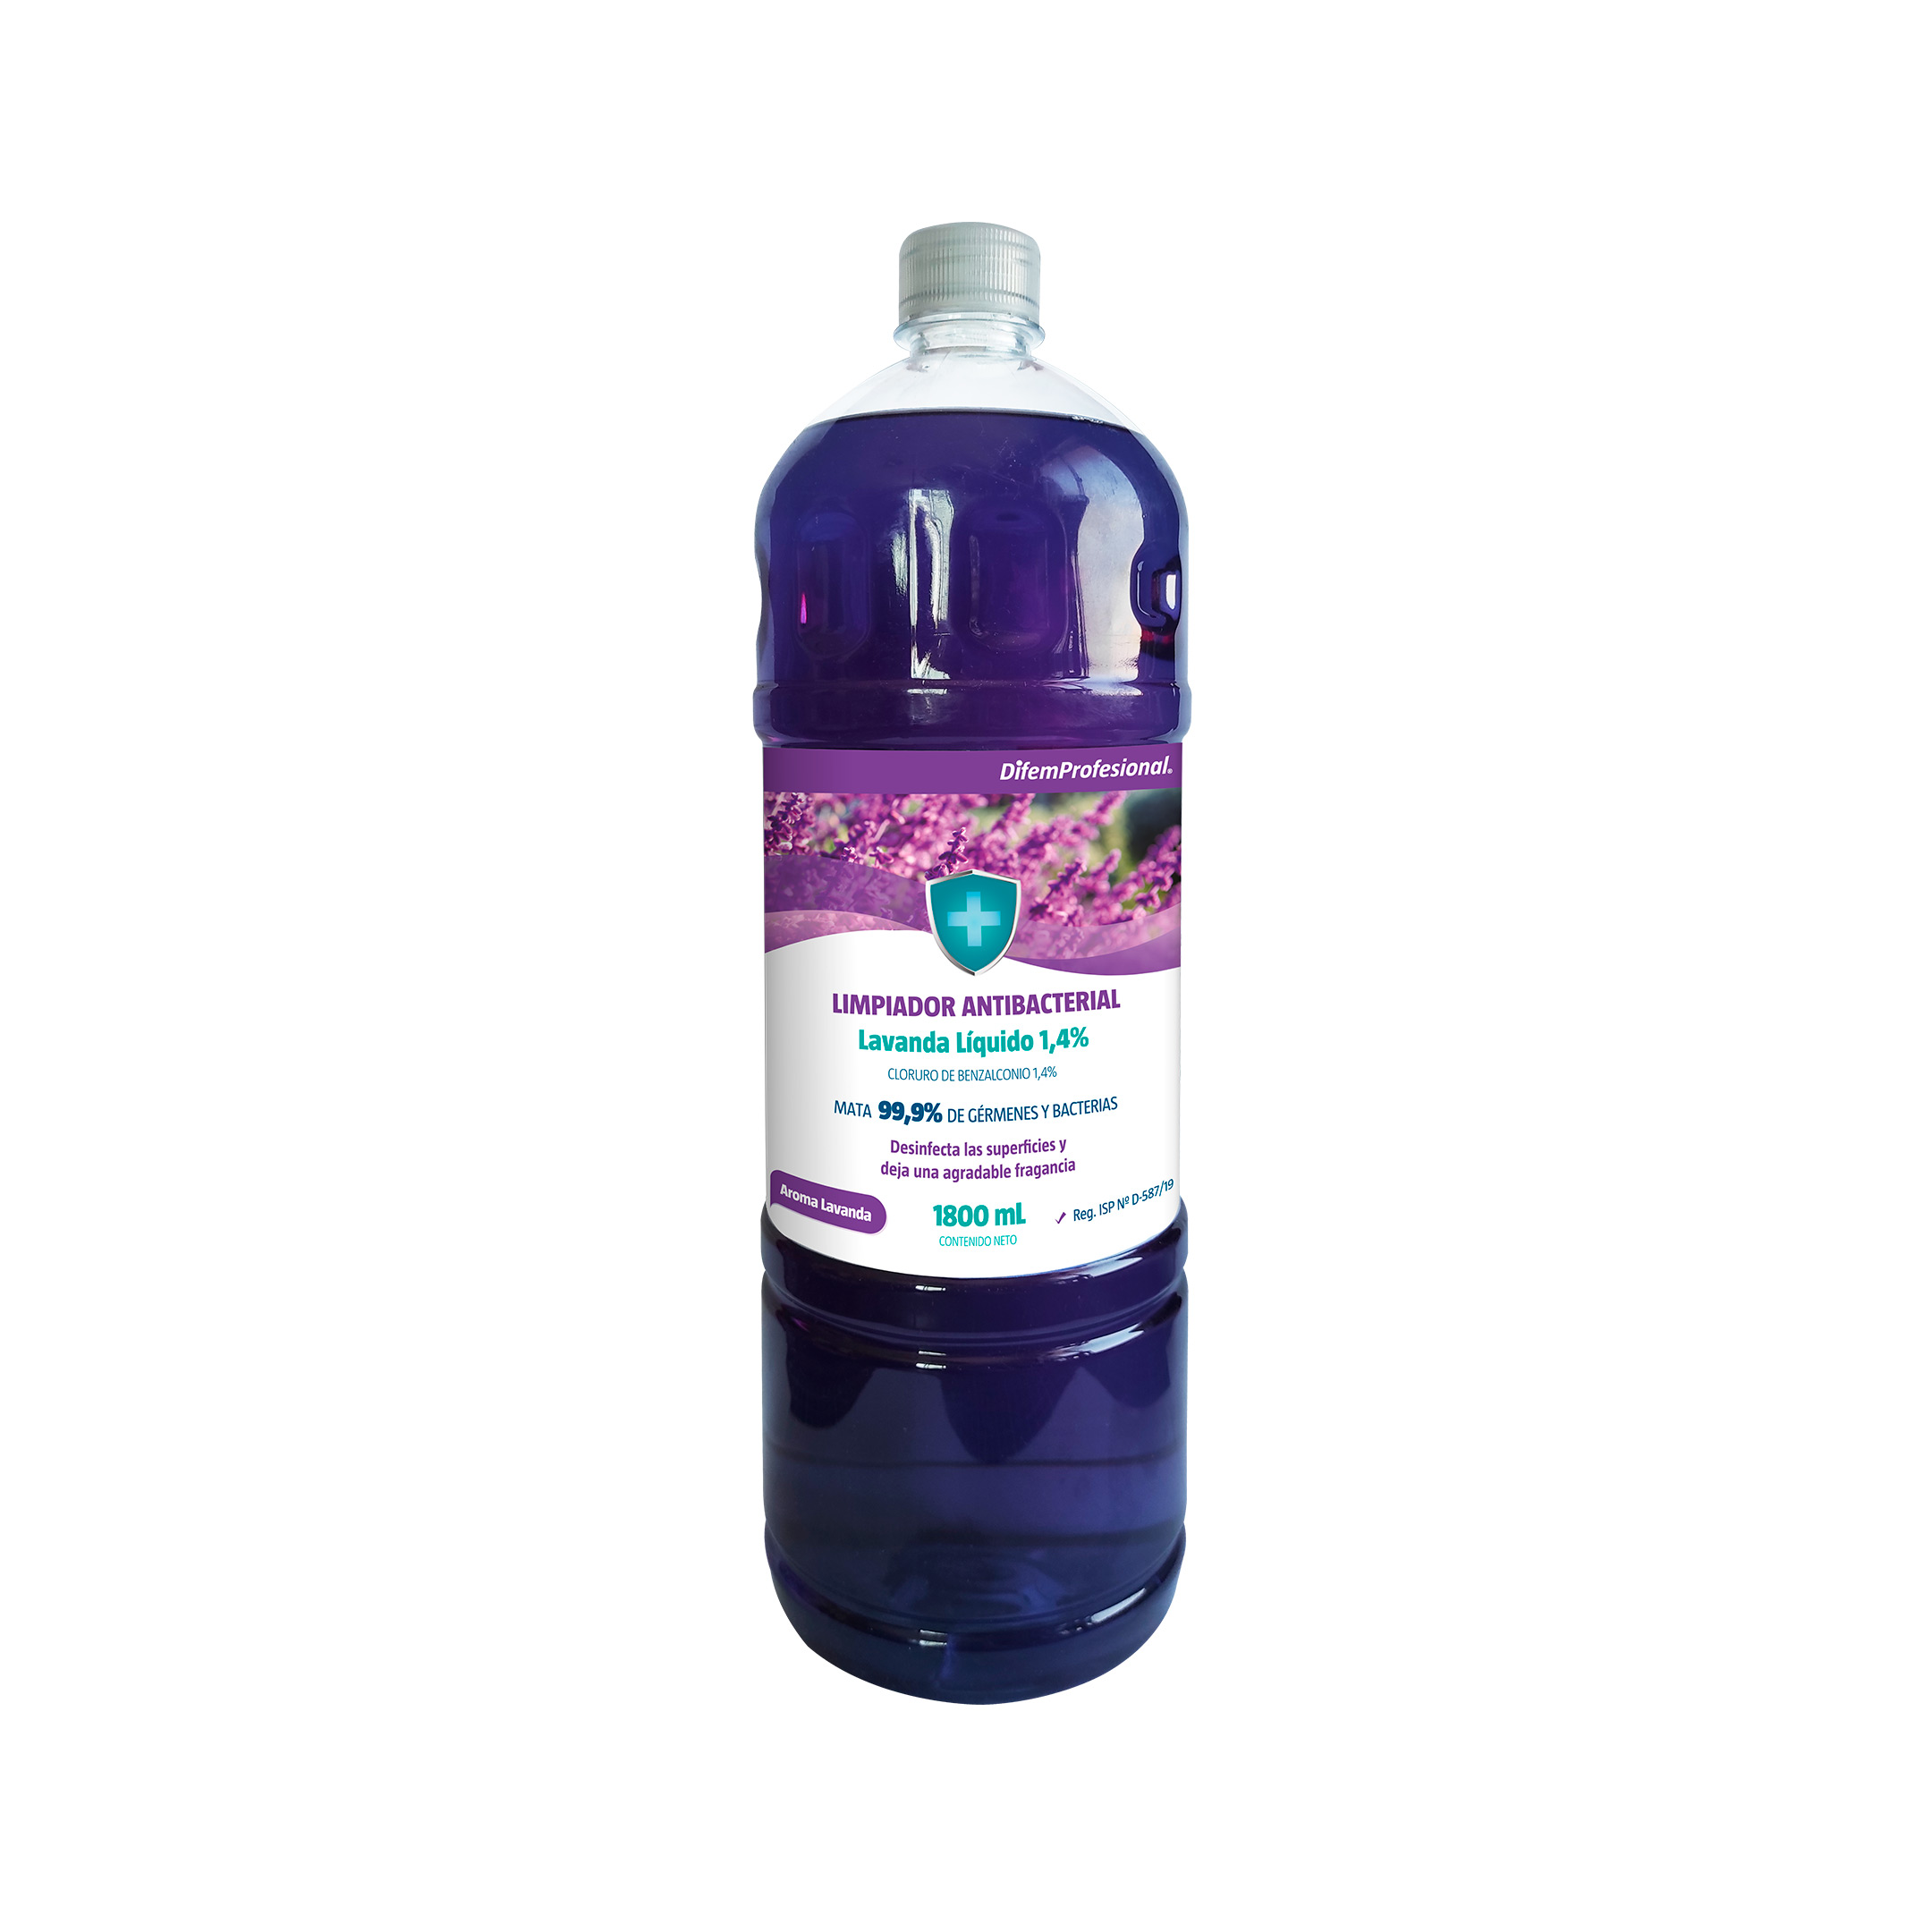 Limpiador líquido desinfectante, Cloruro de Benzalconio 1,4%, mata el 99,9% de germenes y bacterias, desinfecta las superficies y deja una agradable aroma.